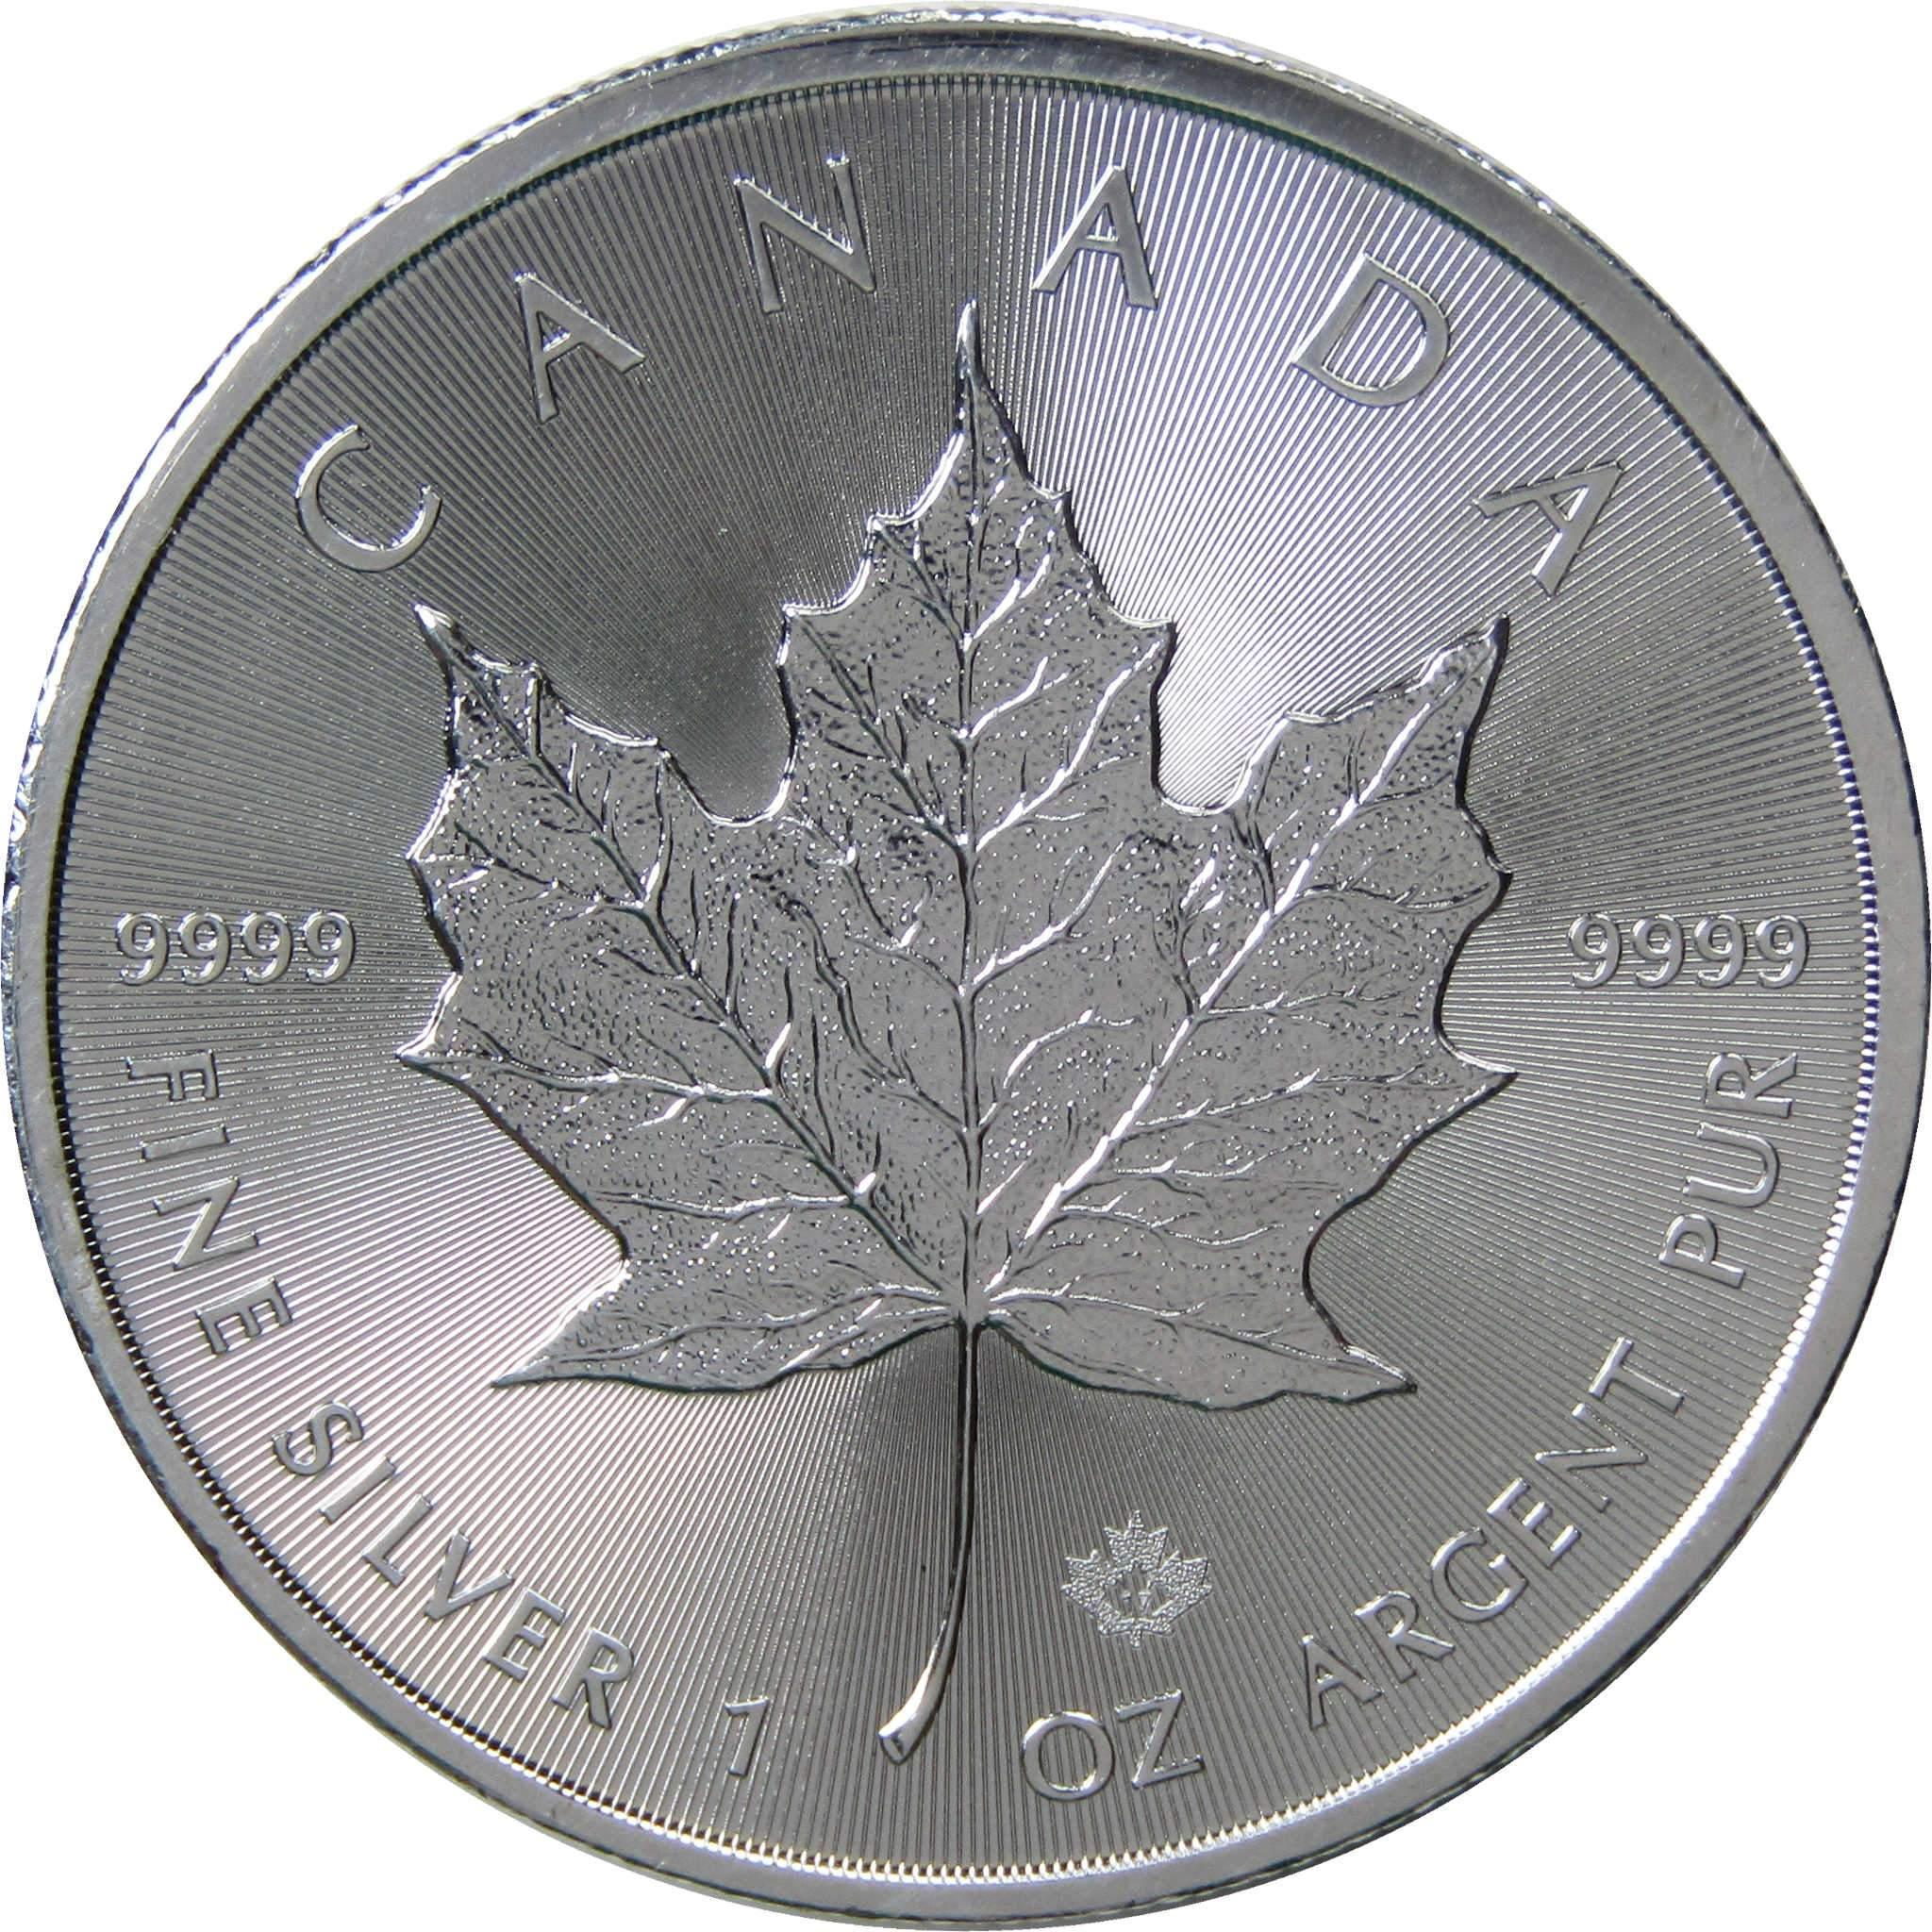 2017 Canadian Maple Leaf BU Brilliant Uncirculated 1 oz .9999 Silver $5 Coin